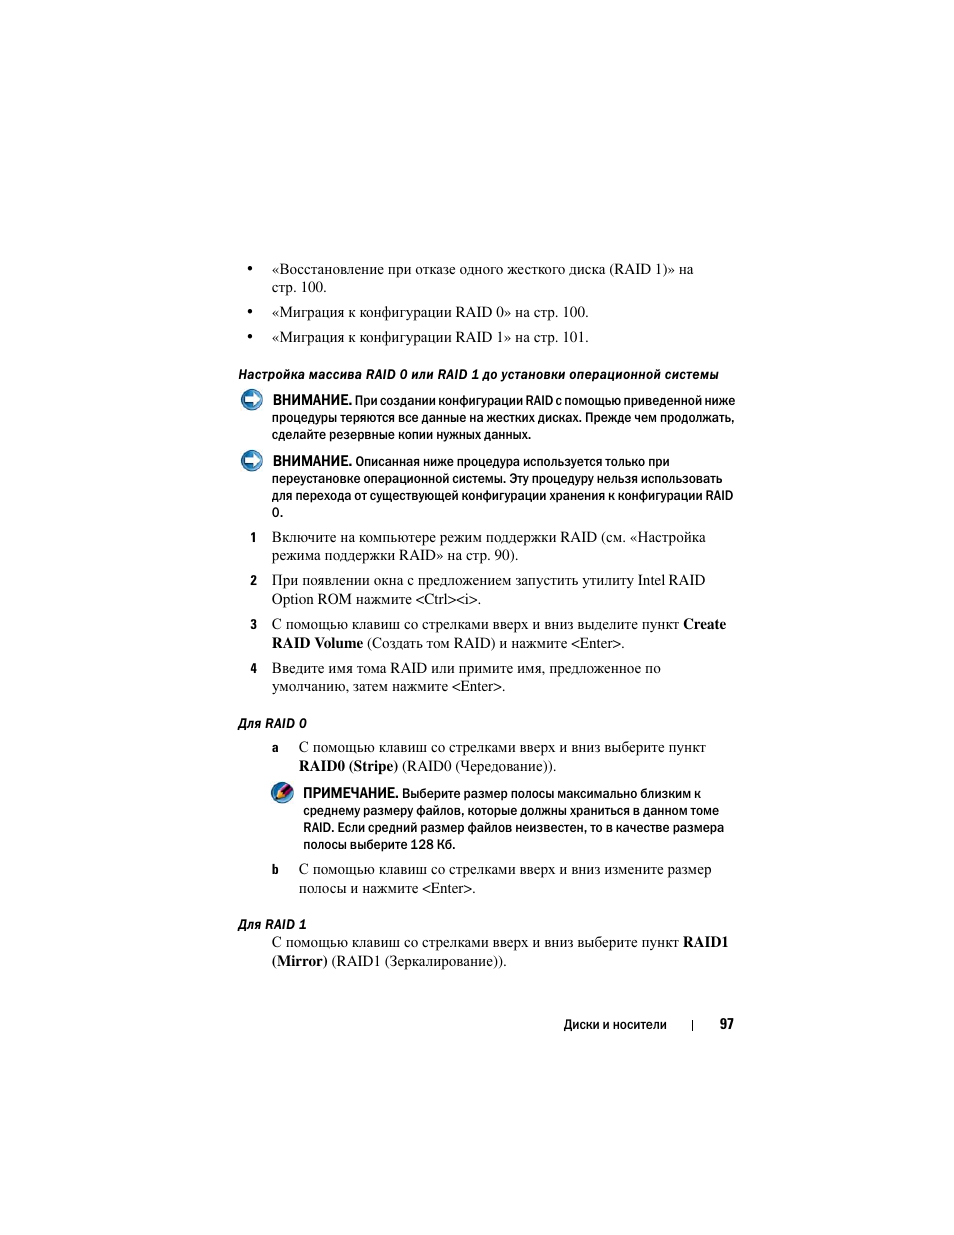 Инструкция по эксплуатации Dell Inspiron 560 | Страница 97 / 384